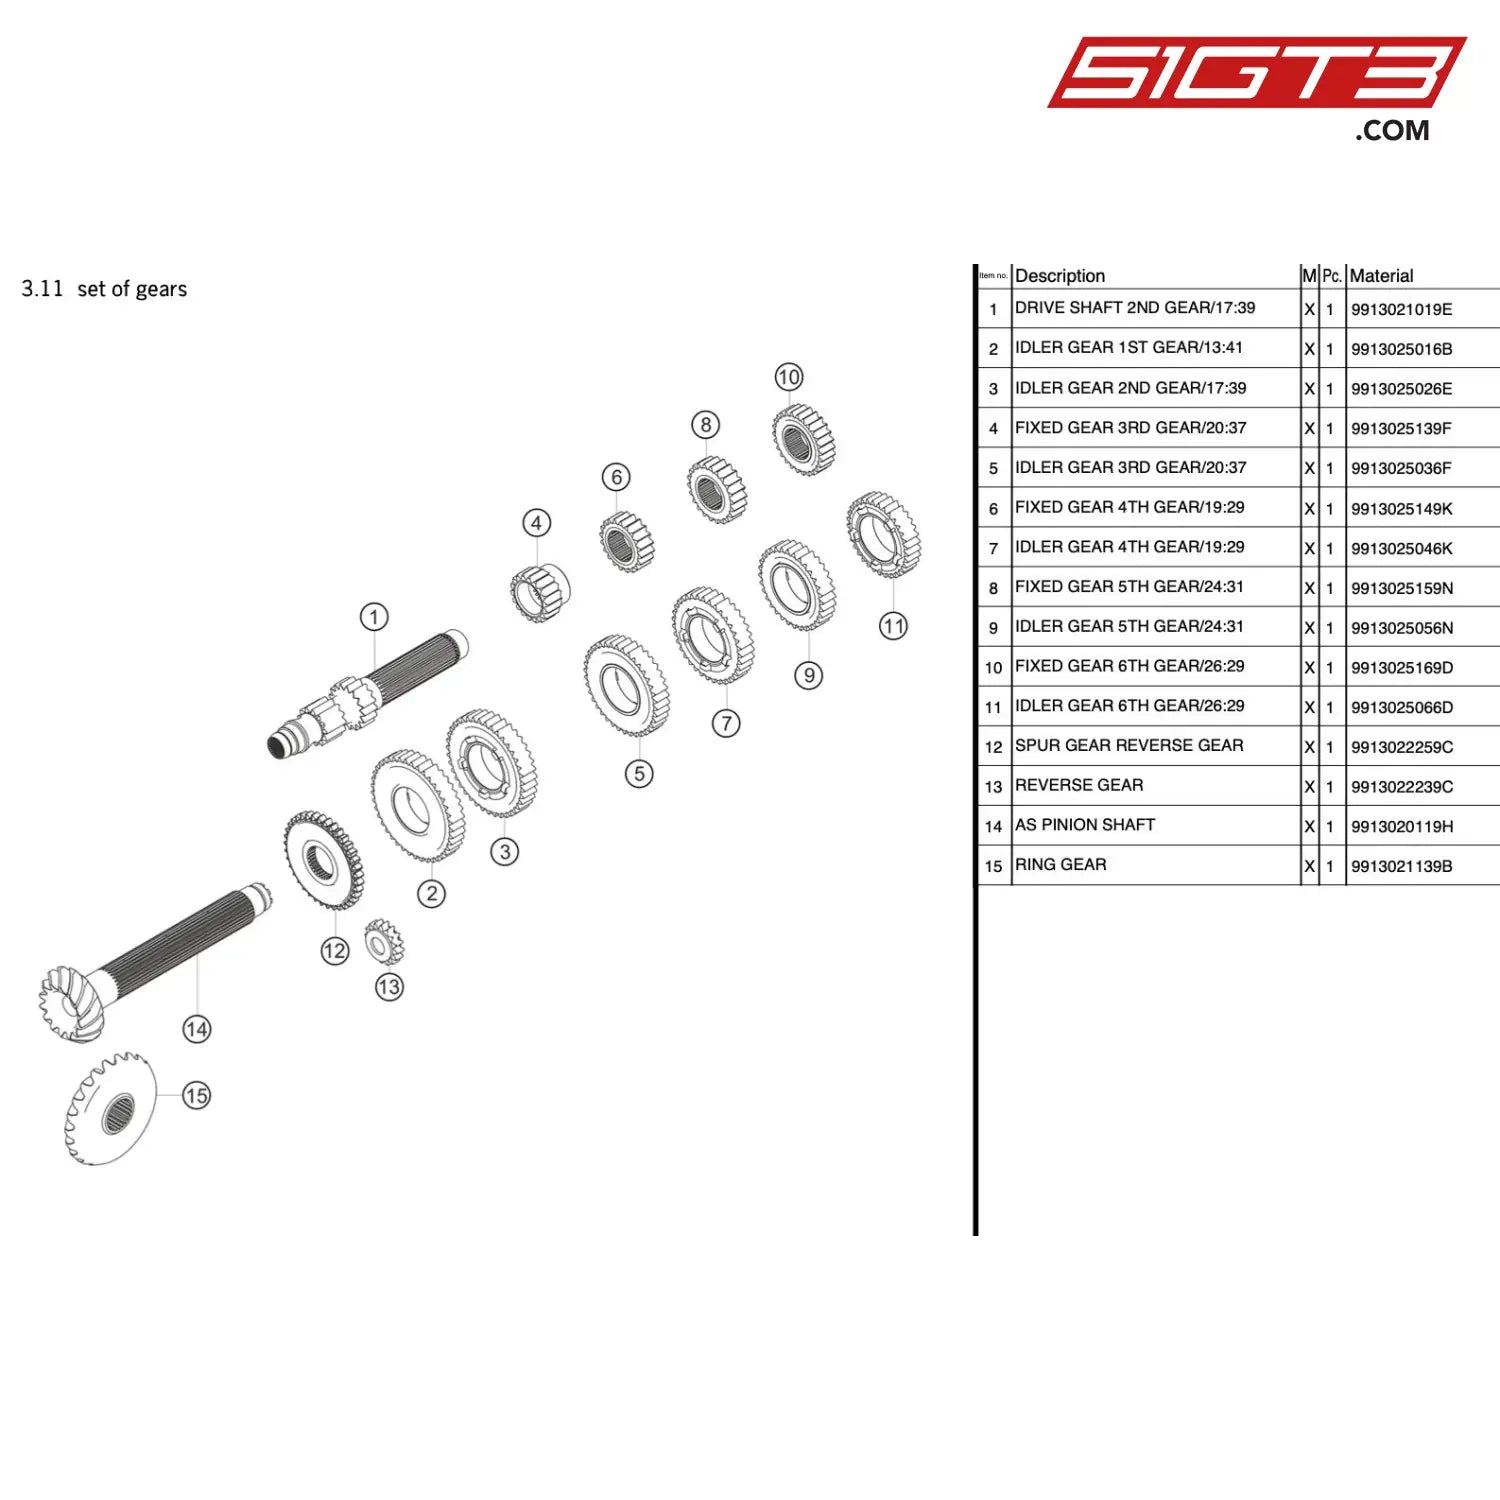 Idler Gear 4Th Gear/19:29 - 9913025046K [Porsche 911 Gt3 R Type 991 (Gen 1)] Set Of Gears